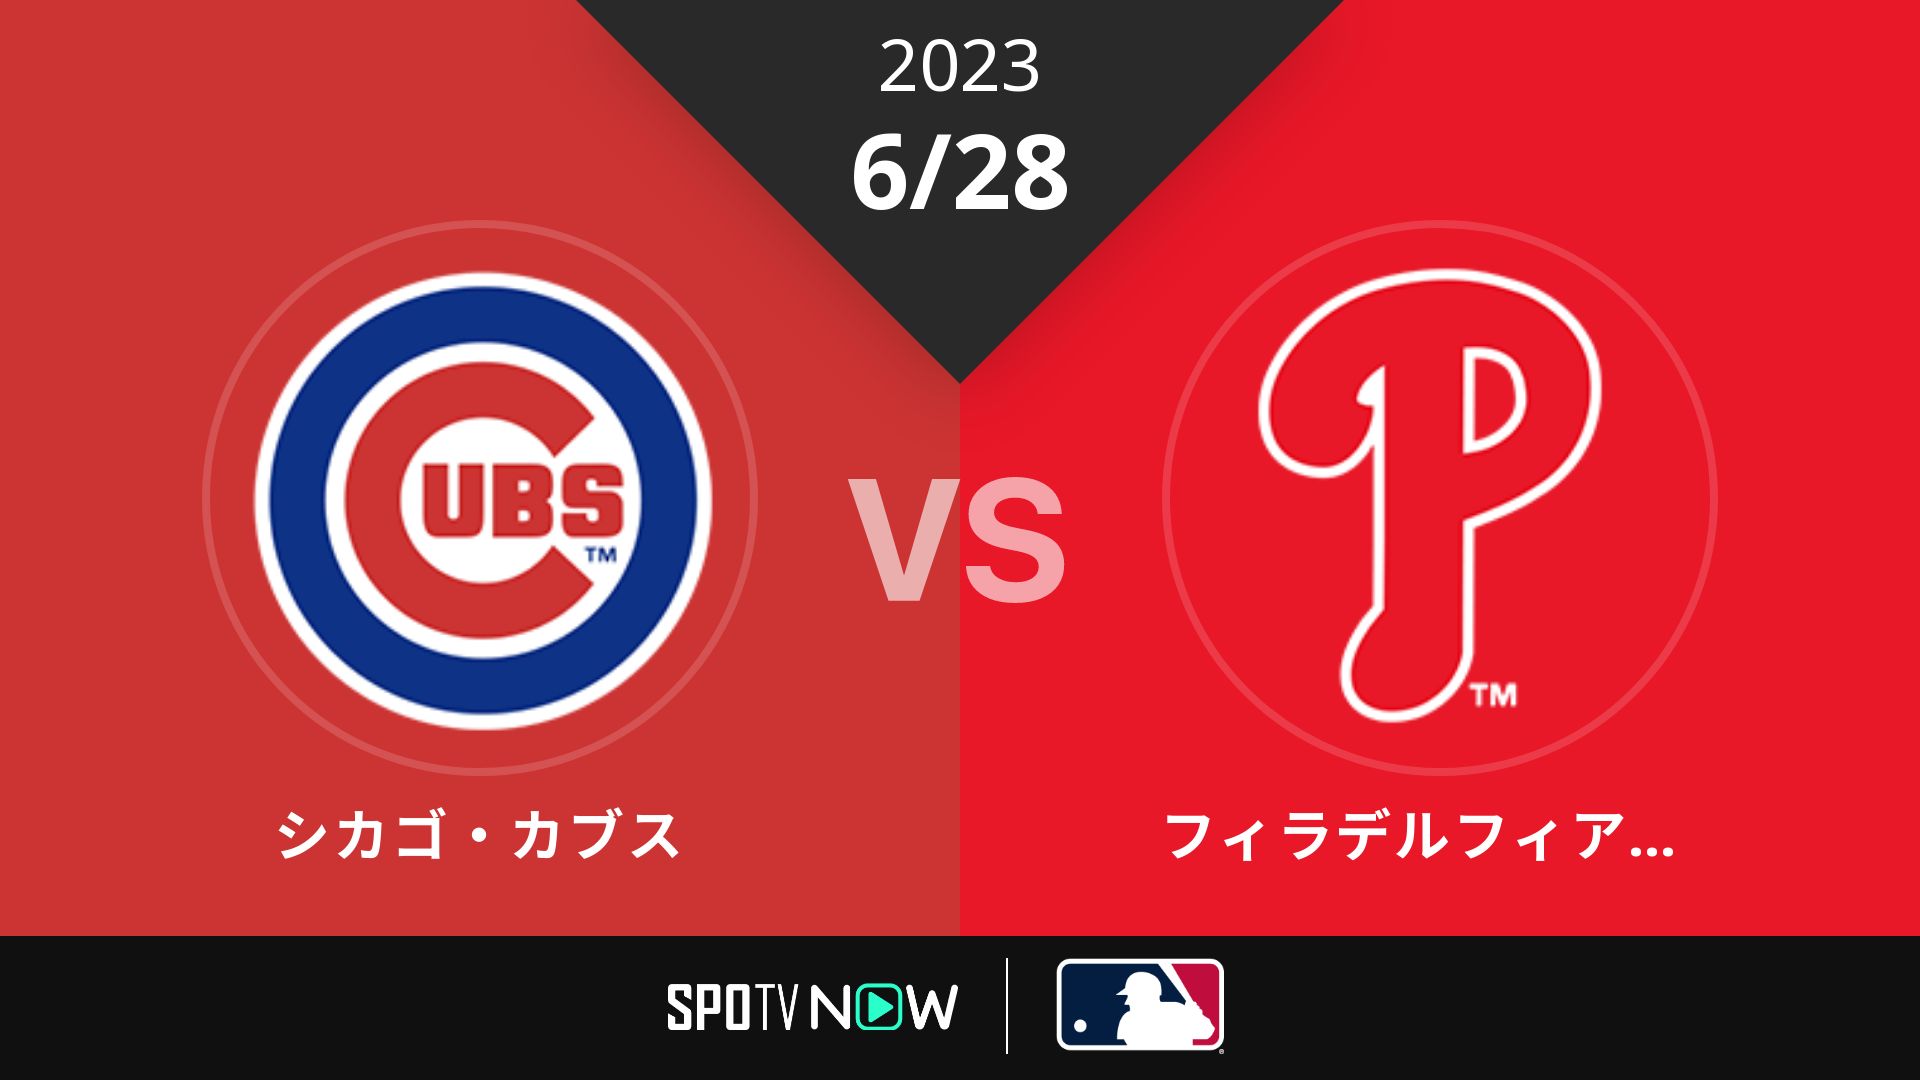 2023/6/28 カブス vs フィリーズ [MLB]